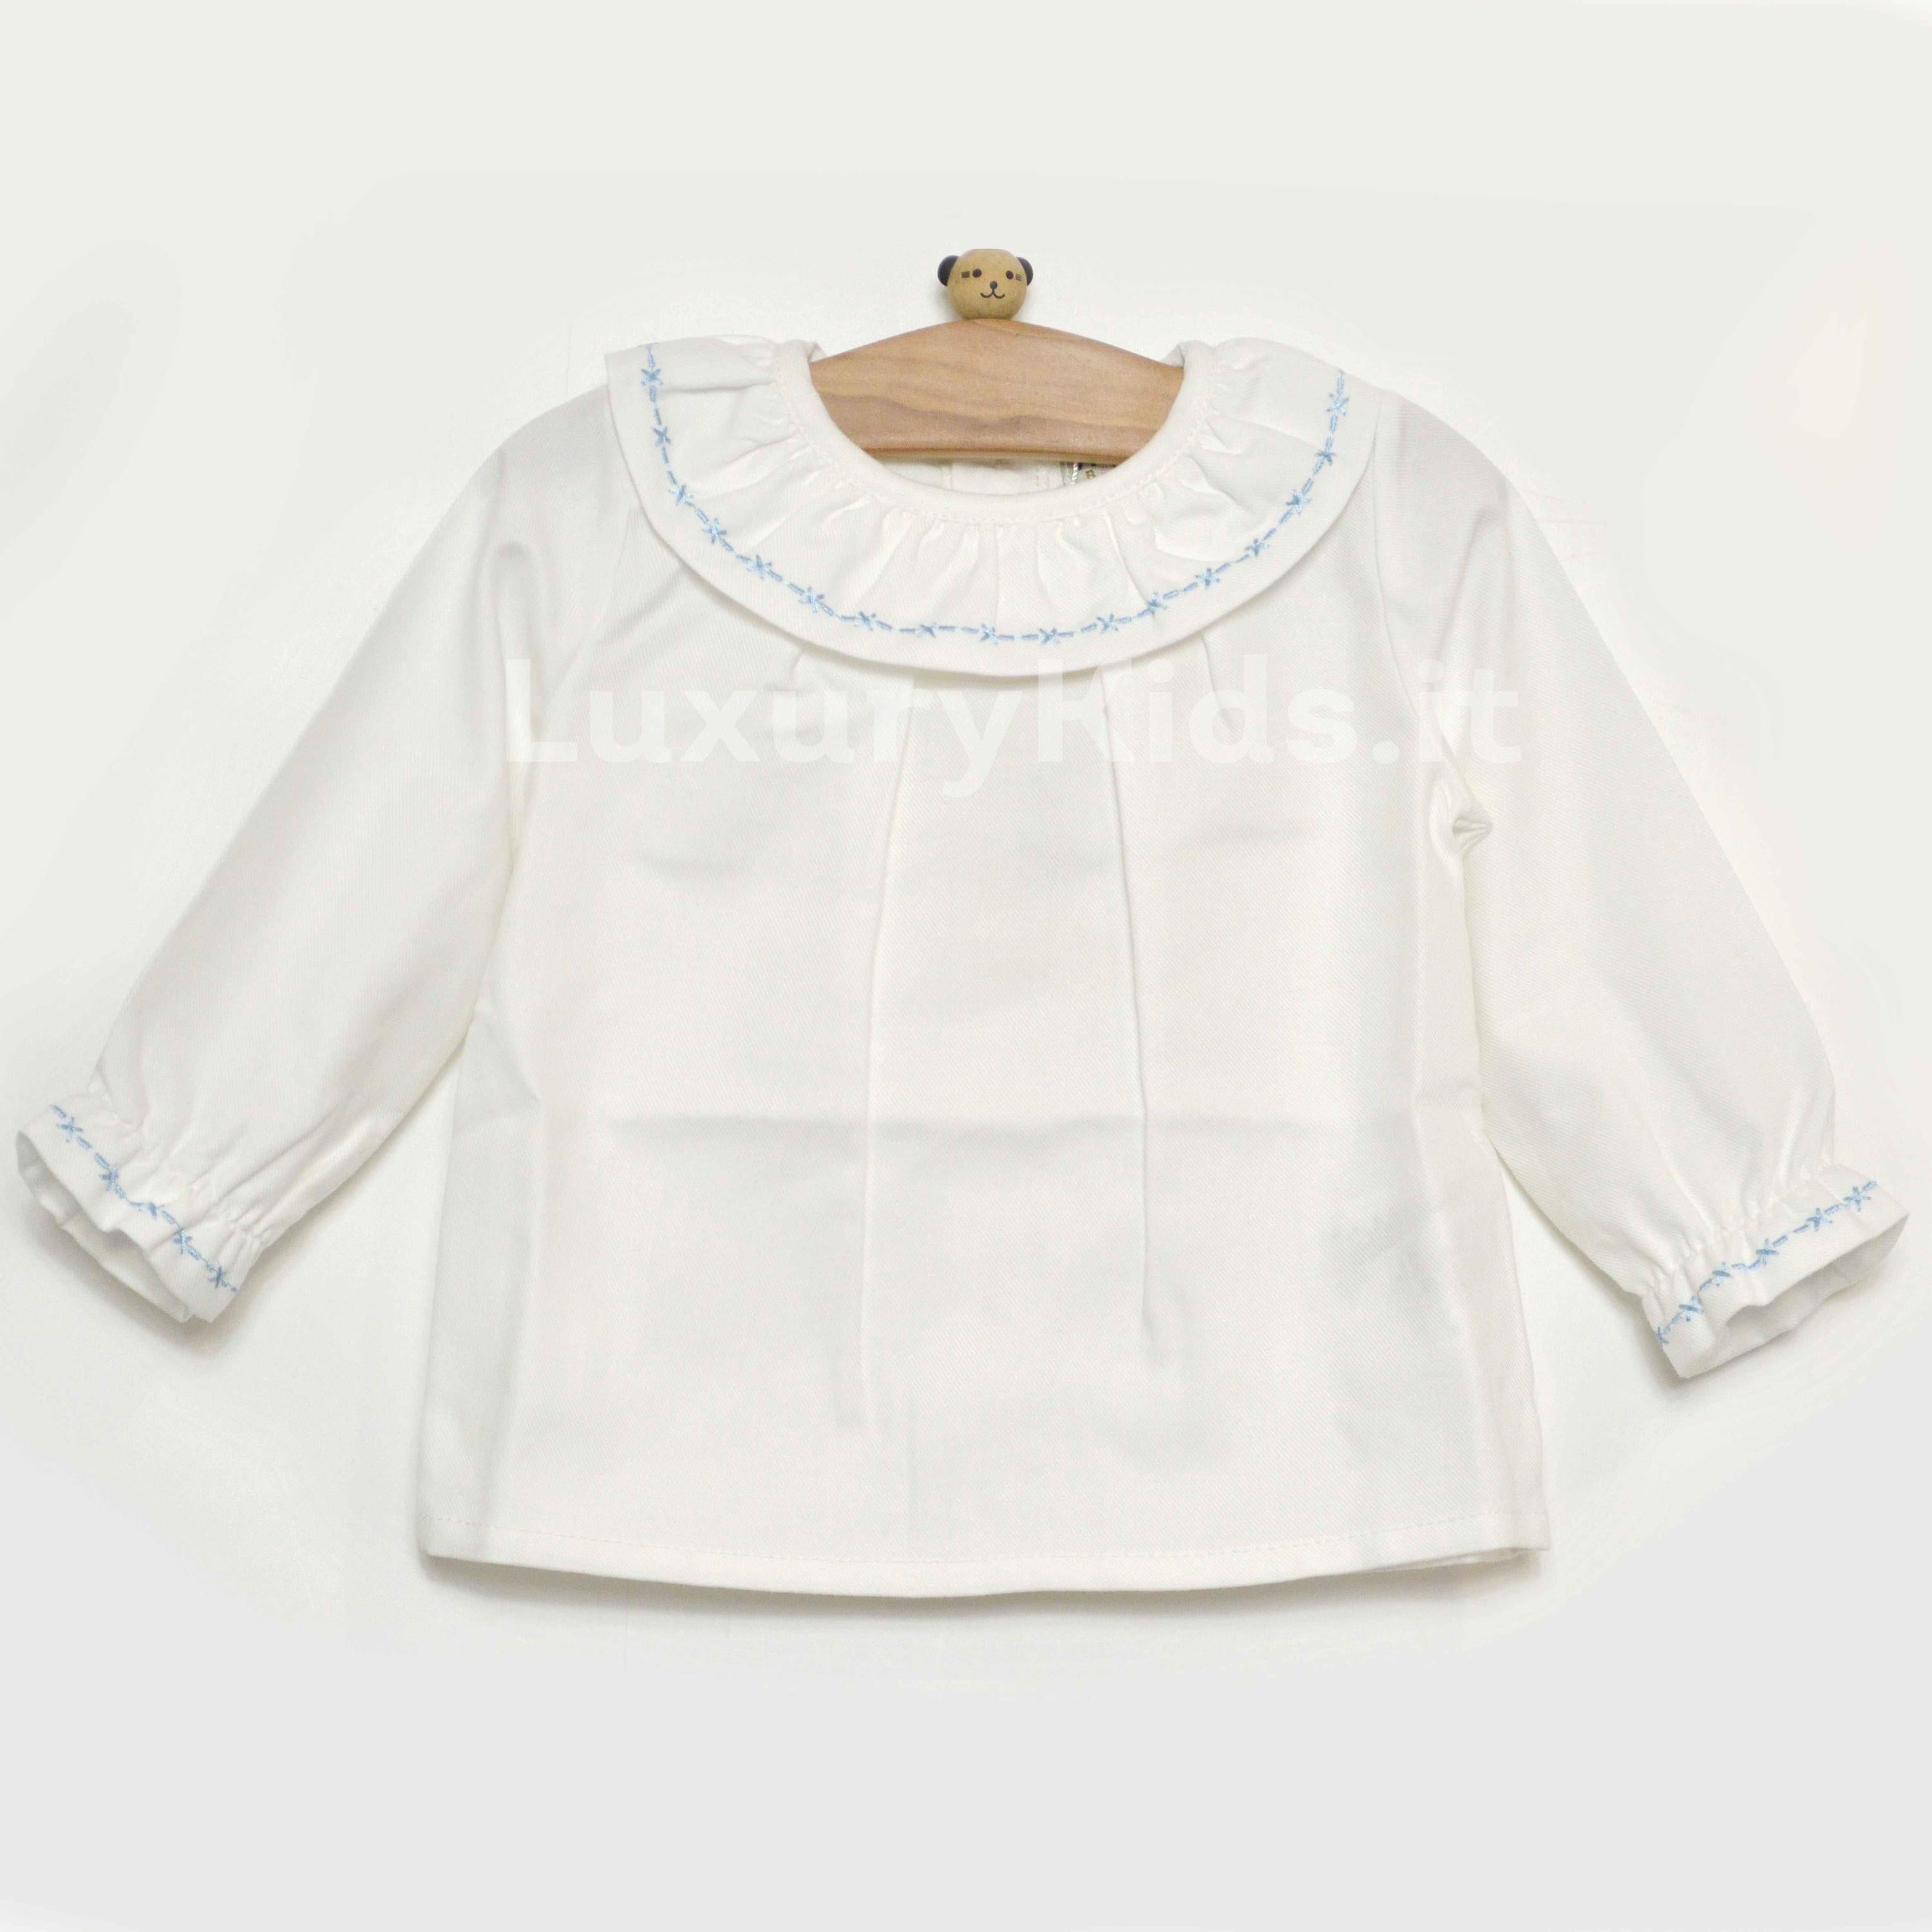 Camicia in Caldo Cotone Manica Lunga con Colletto Rouches Bianco-Celeste Neonata A&J 209A - A&J - LuxuryKids